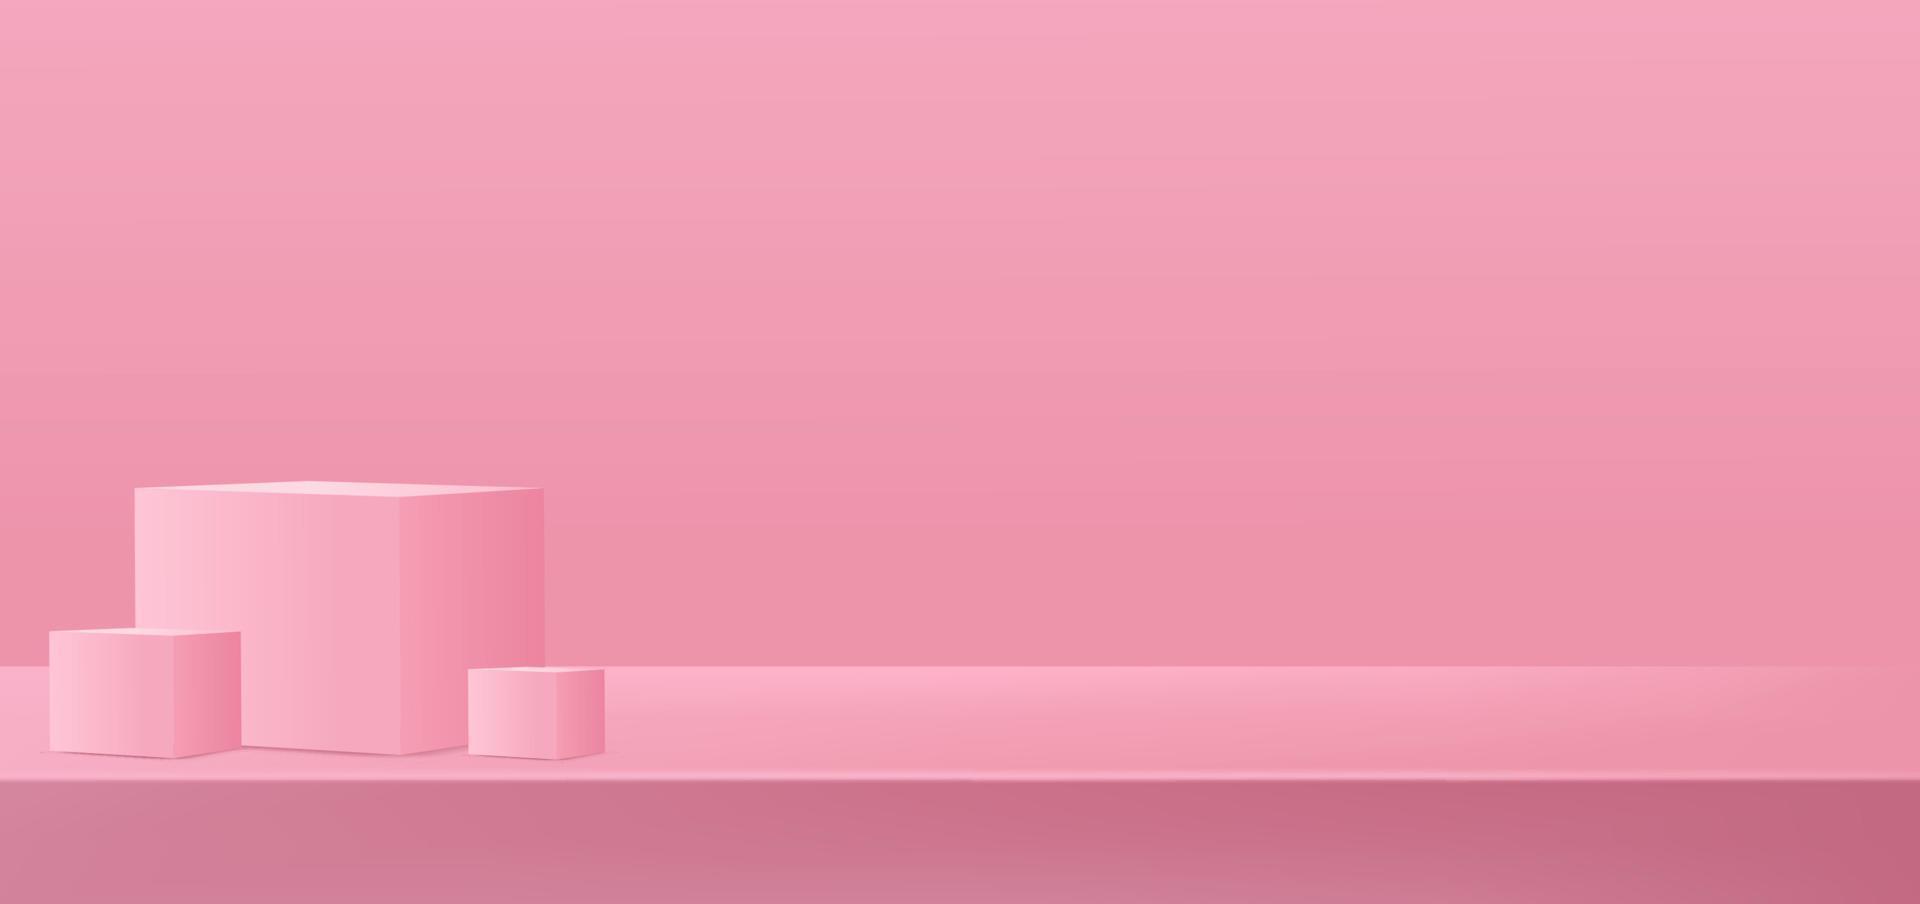 Concetto di vettore di sfondo podio rosa 3d, adatto per il design di sfondo romantico, modello, banner di san valentino